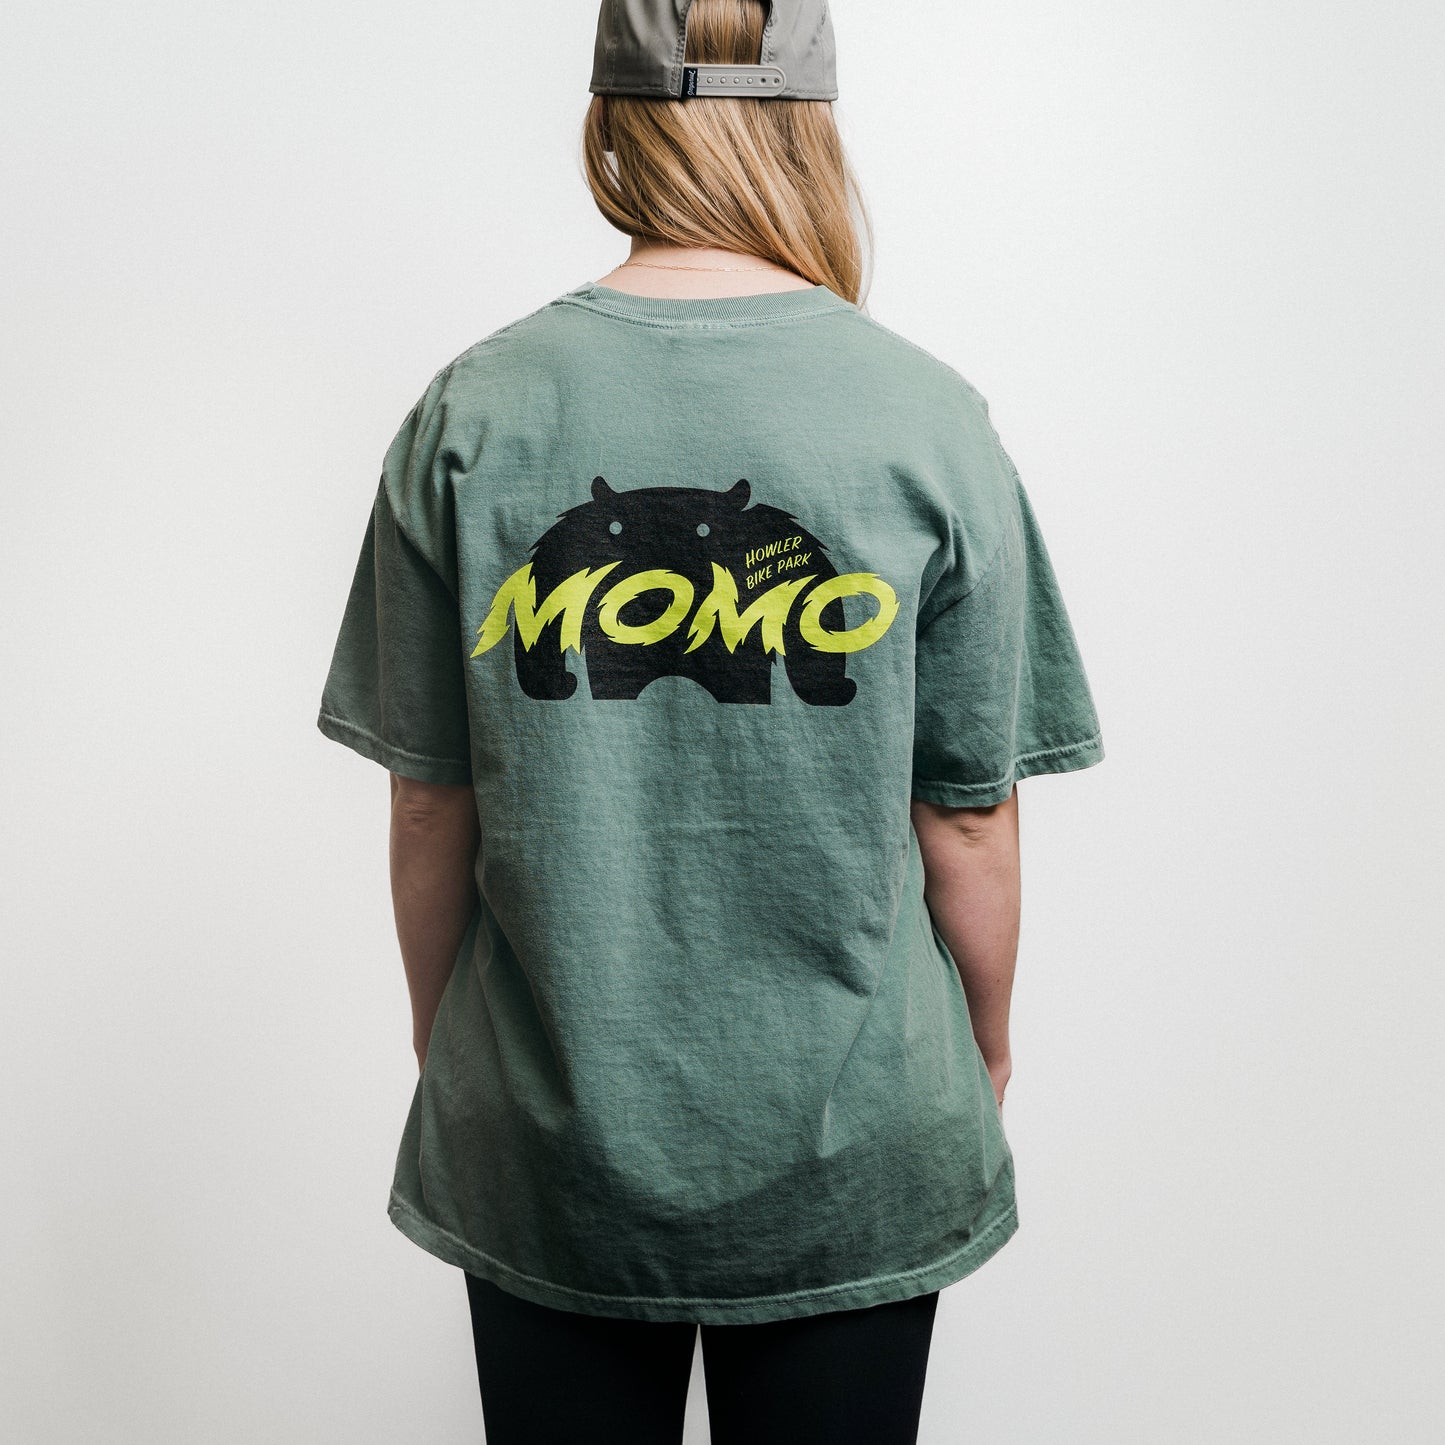 Howler Bike Park Momo T-Shirt